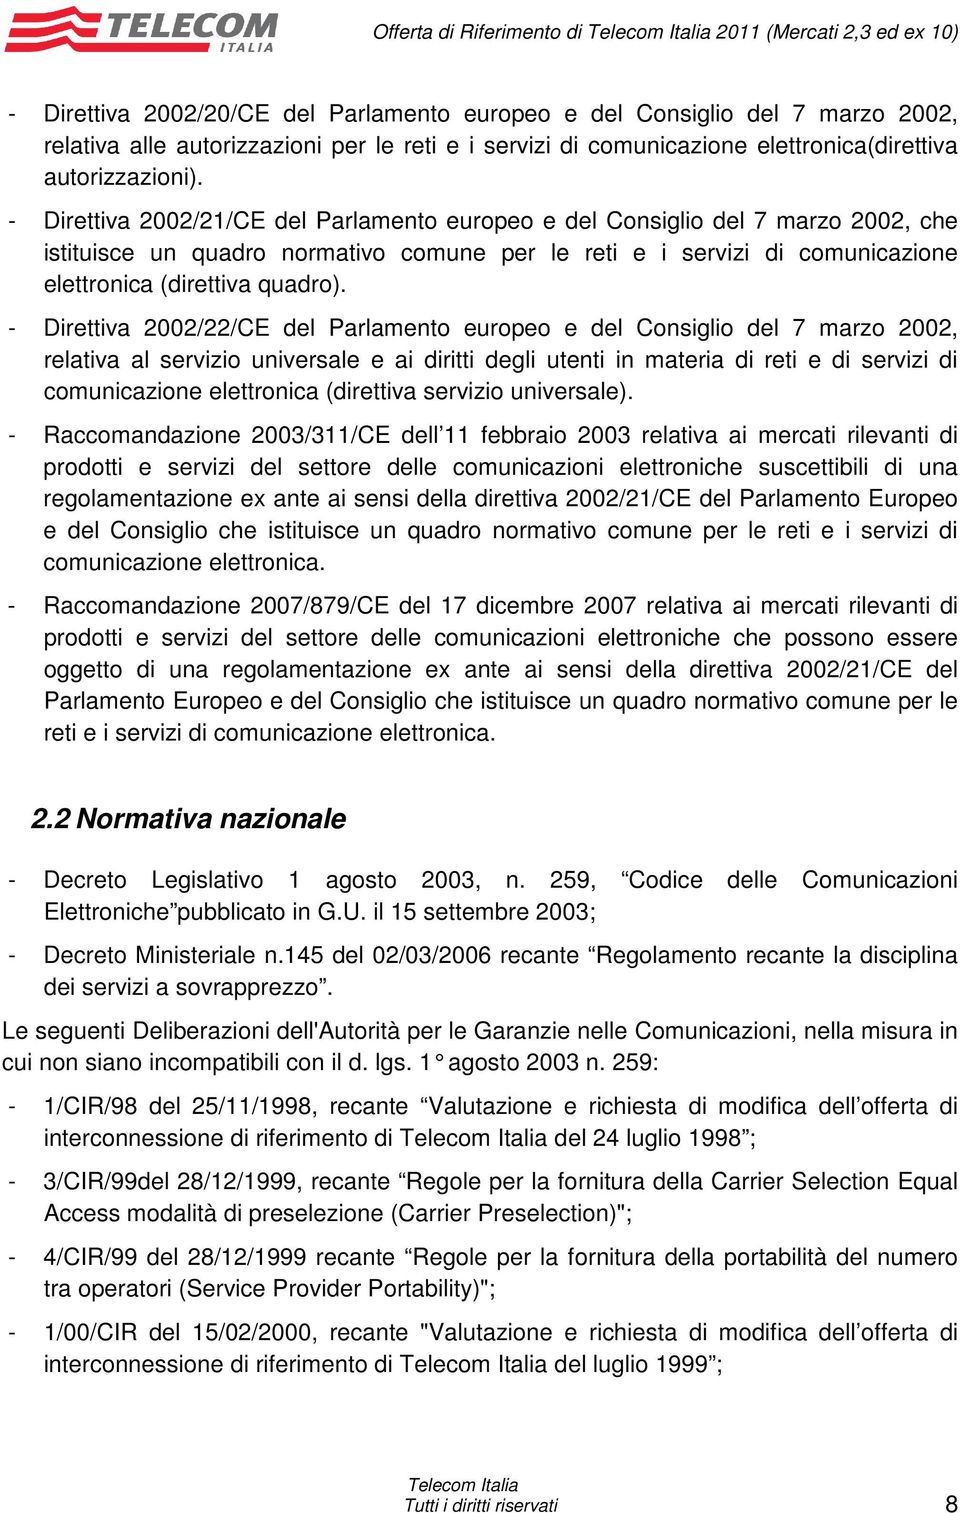 - Direttiva 2002/21/CE del Parlamento europeo e del Consiglio del 7 marzo 2002, che istituisce un quadro normativo comune per le reti e i servizi di comunicazione elettronica (direttiva quadro).